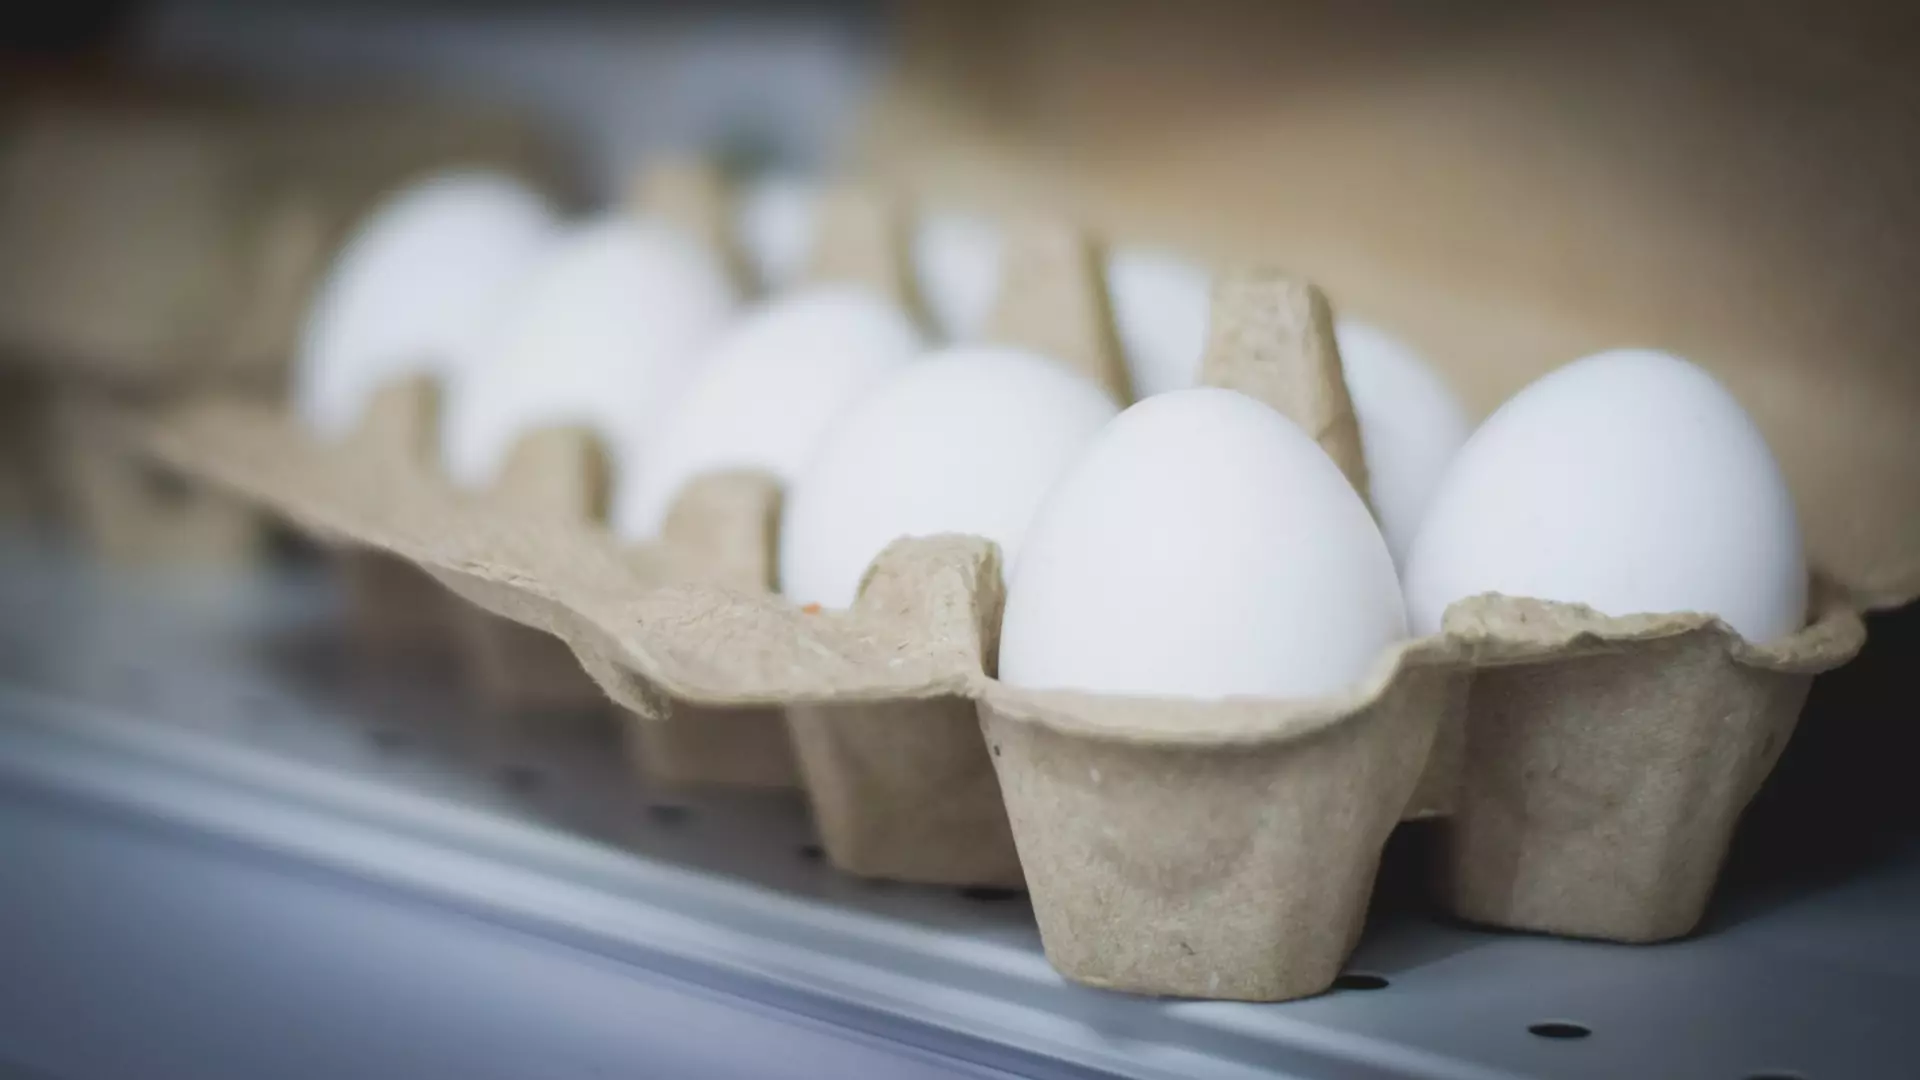 Цена на яйца в Ямало-Ненецком автономном округе достигла 700 рублей за 30 штук